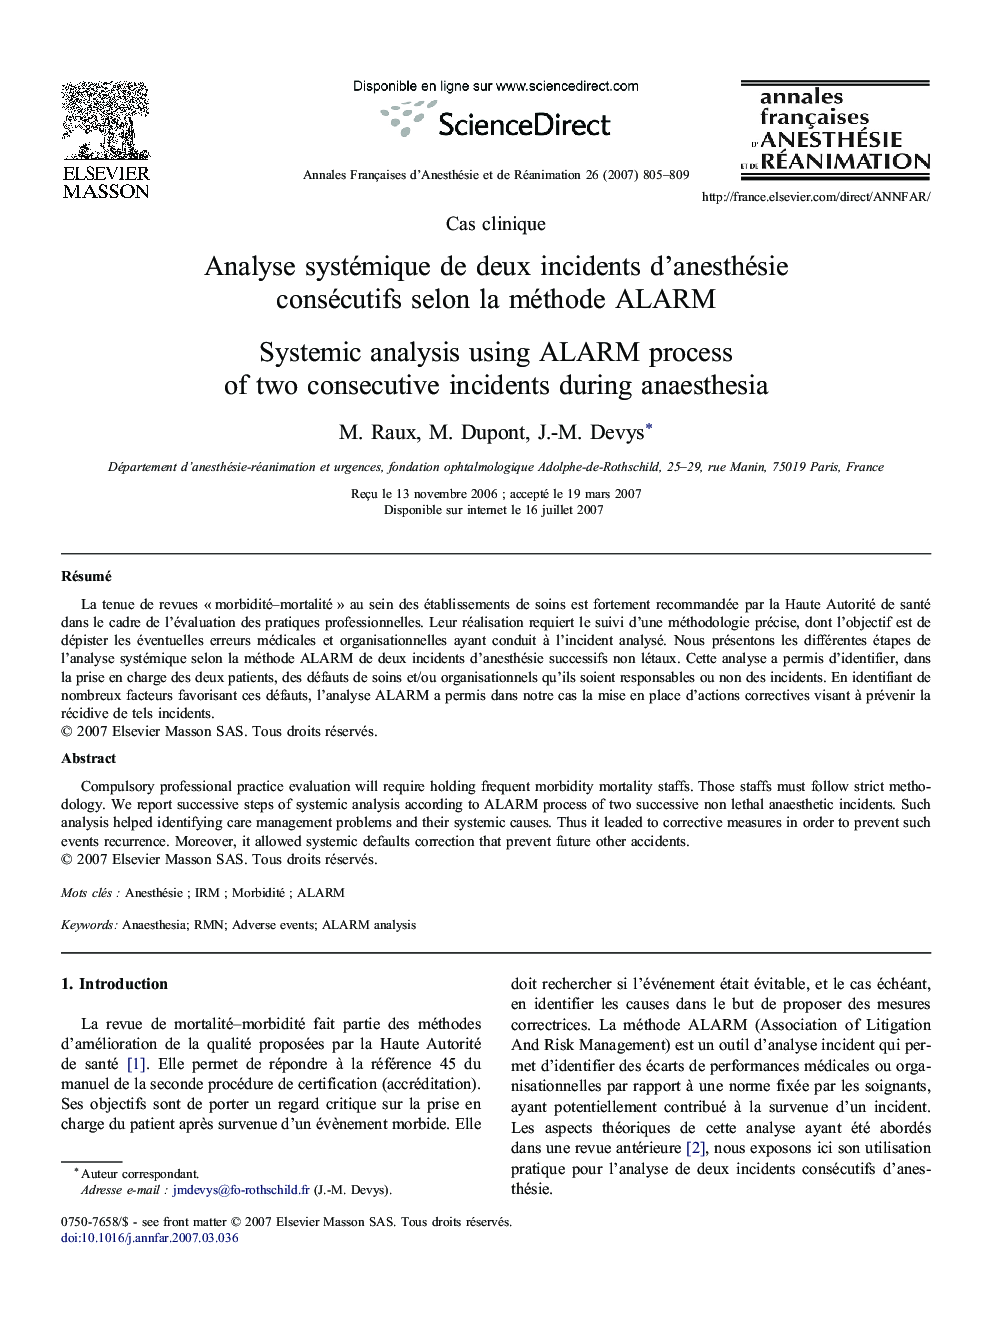 Analyse systémique de deux incidents d'anesthésie consécutifs selon la méthode ALARM